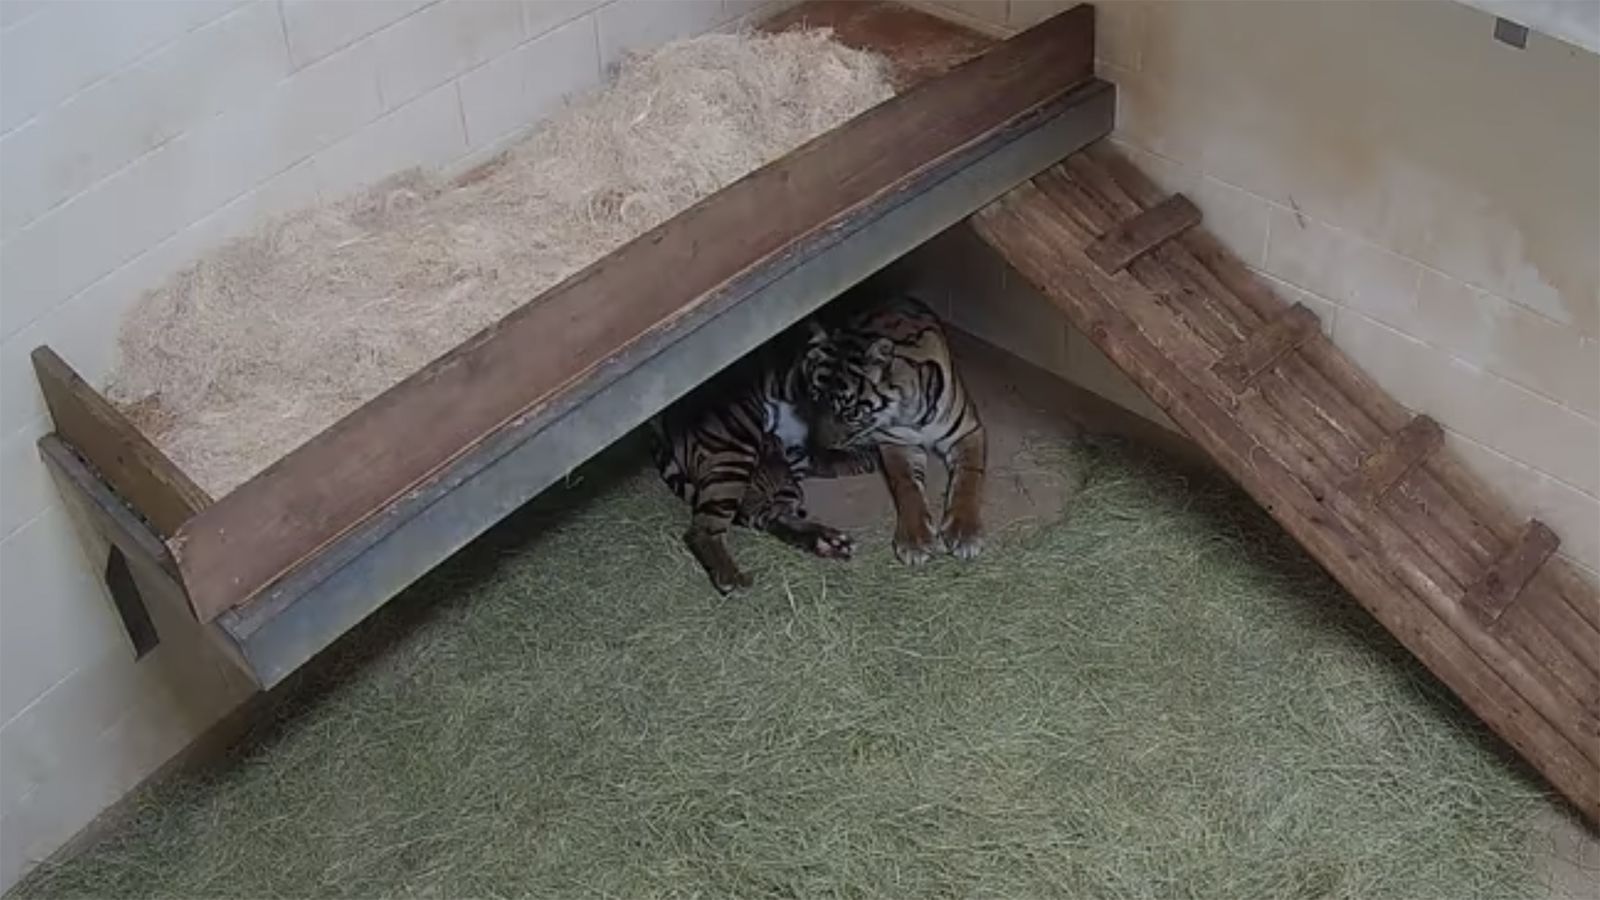 Sumatran Tiger Cubs Receive First Vet Checkup at Oklahoma City Zoo